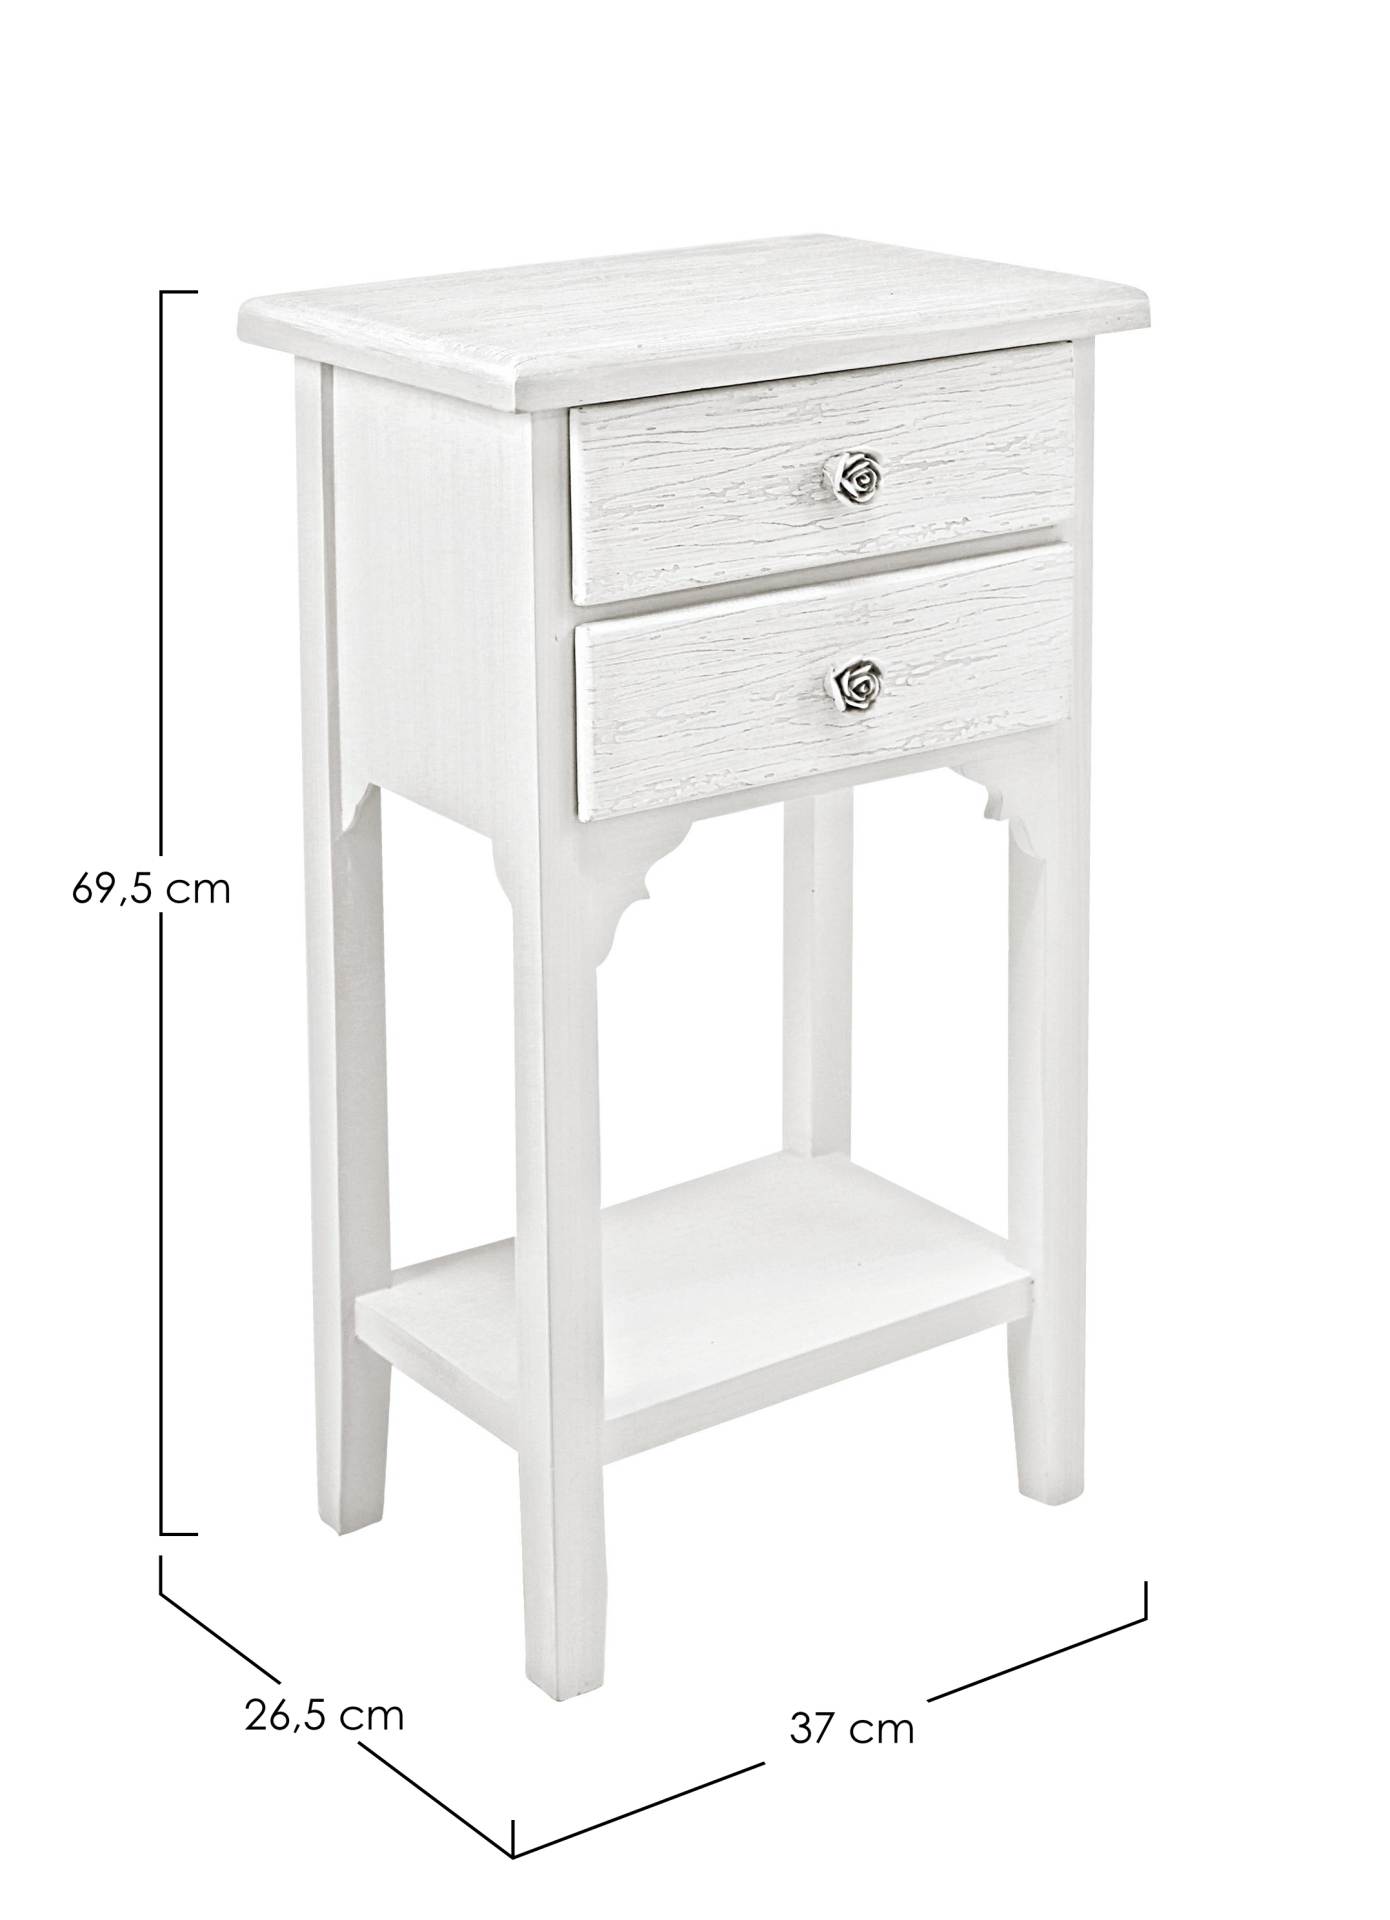 Der Nachttisch Blanc überzeugt mit seinem klassischen Design. Gefertigt wurde er aus MDF, welches einen weißen Farbton besitzt. Das Gestell ist auch aus MDF. Der Nachttisch verfügt über zwei Schubladen. Die Breite beträgt 37 cm.